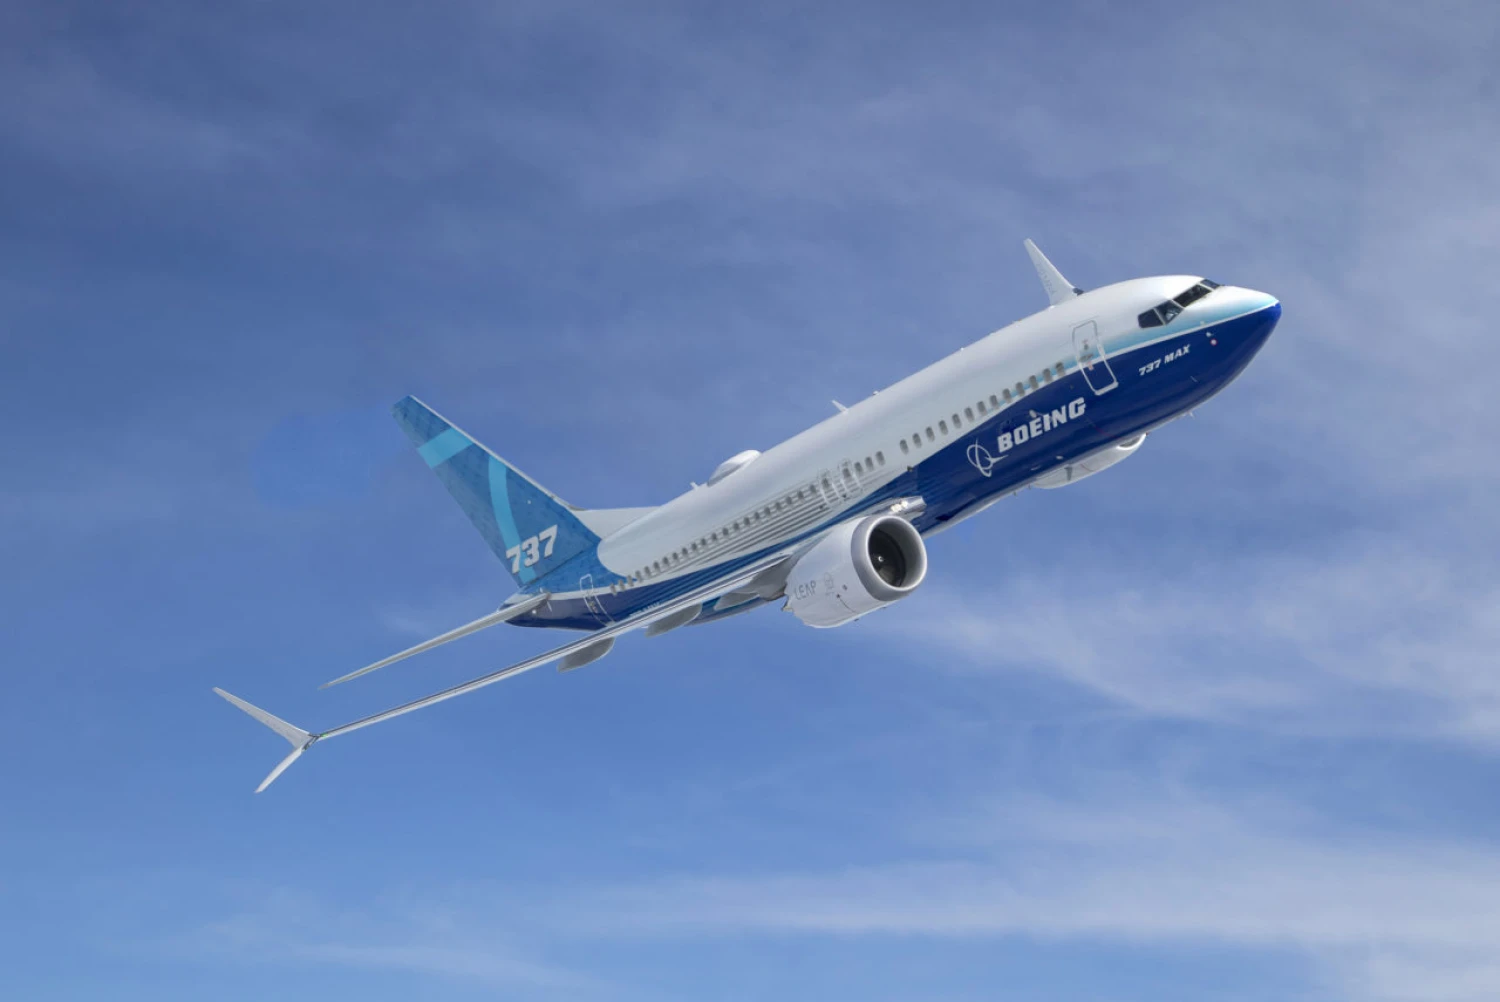 Boeing loni snížil ztrátu více než o polovinu. Tržby stouply o sedmnáct procent